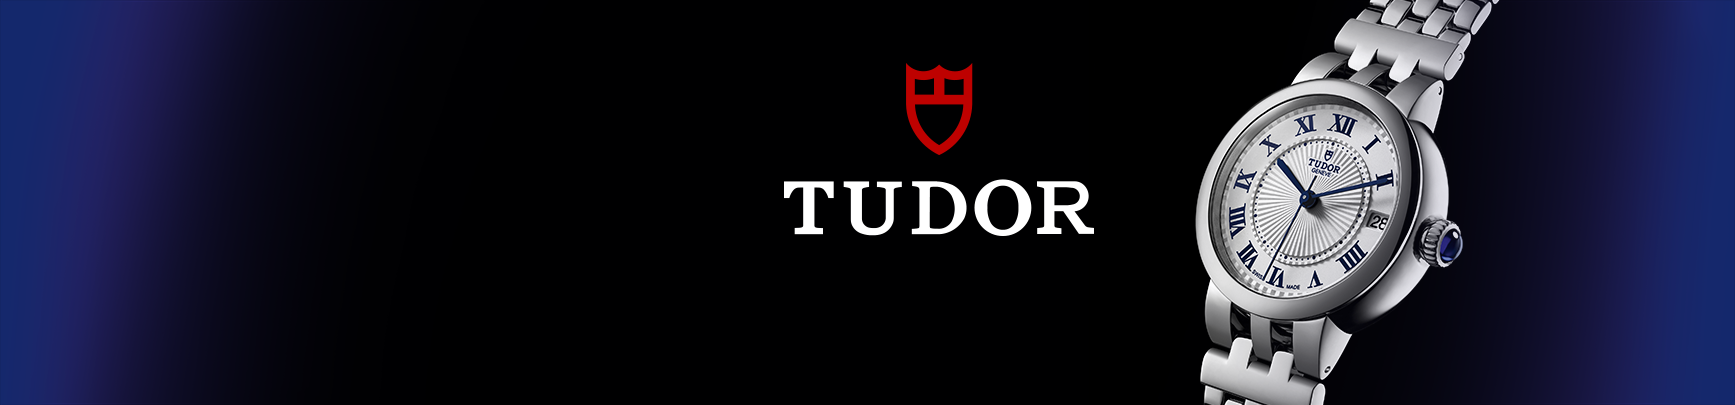 Bandeau illustré Tudor.